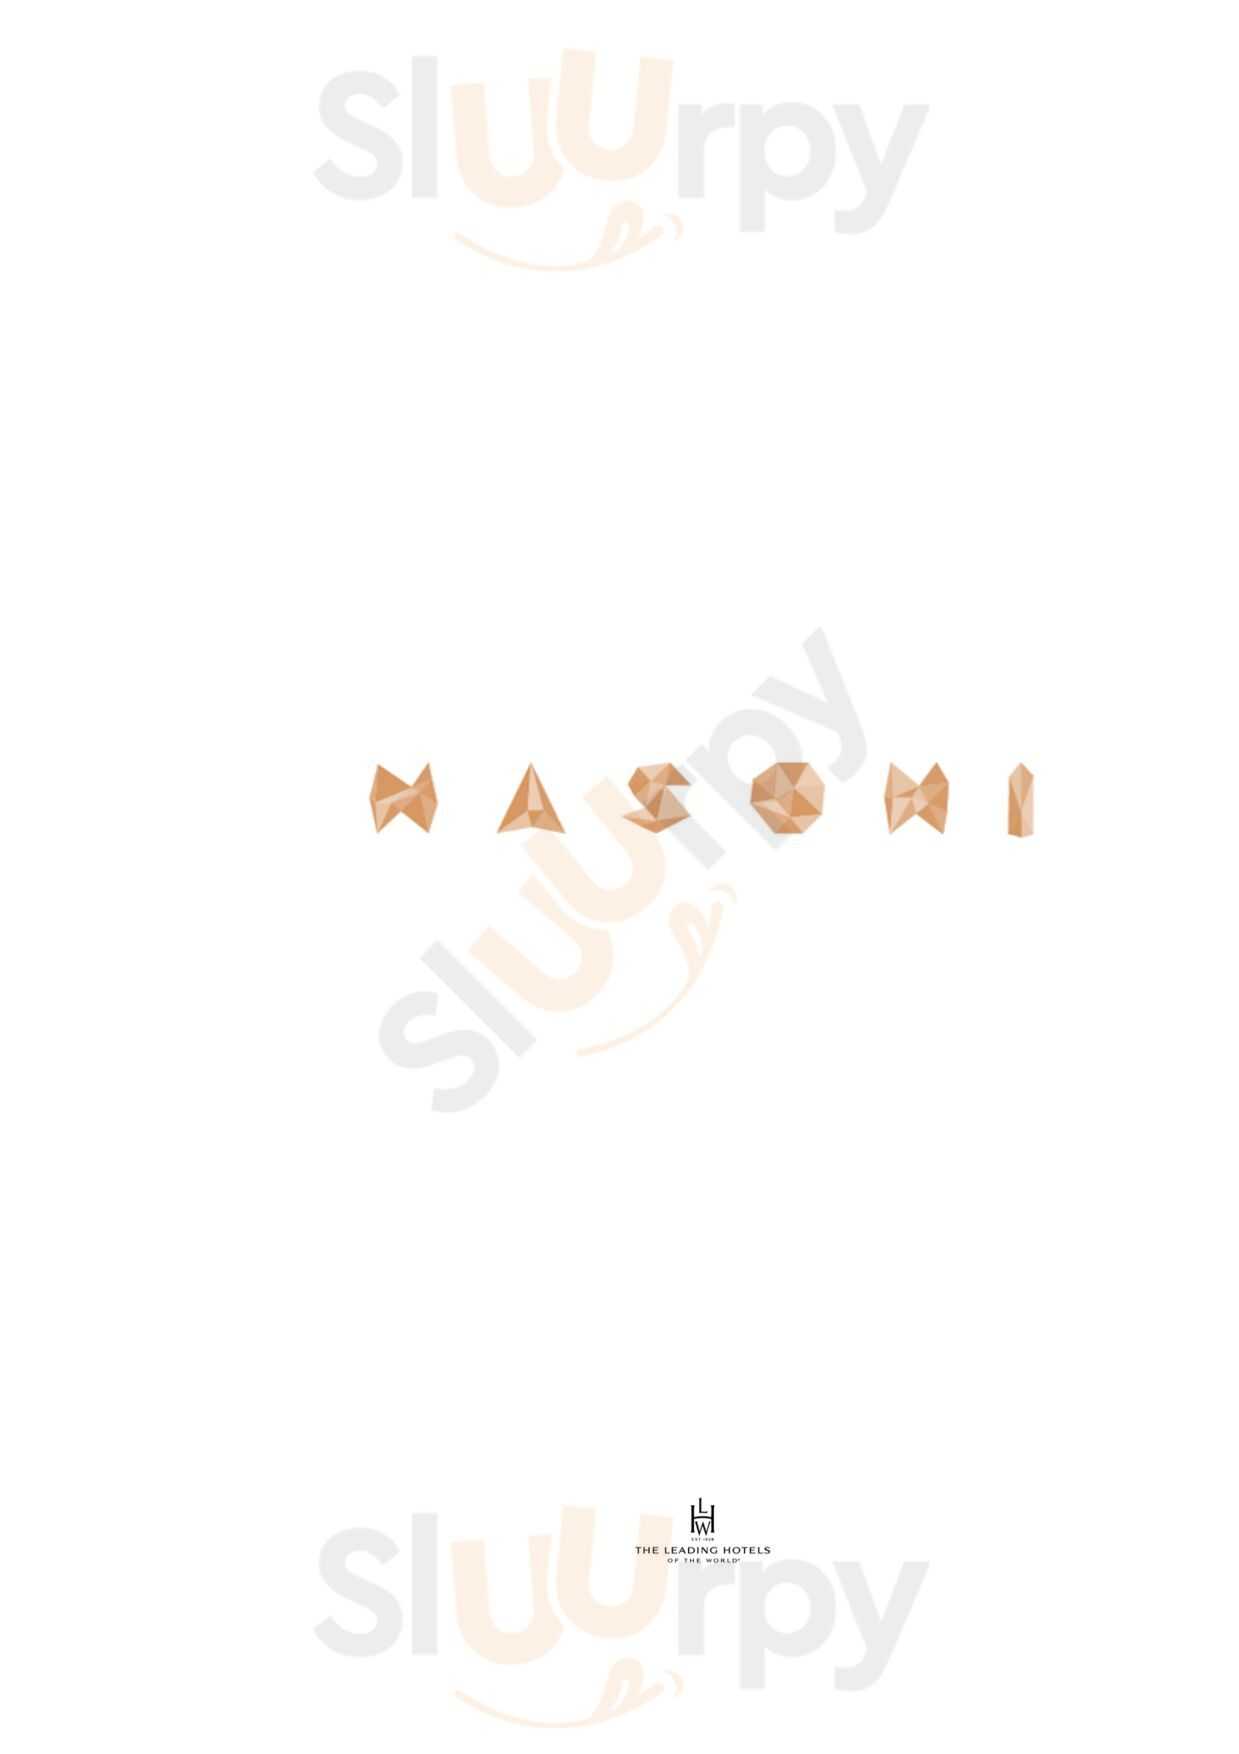 Nasoni Dinning Bar Porto Menu - 1